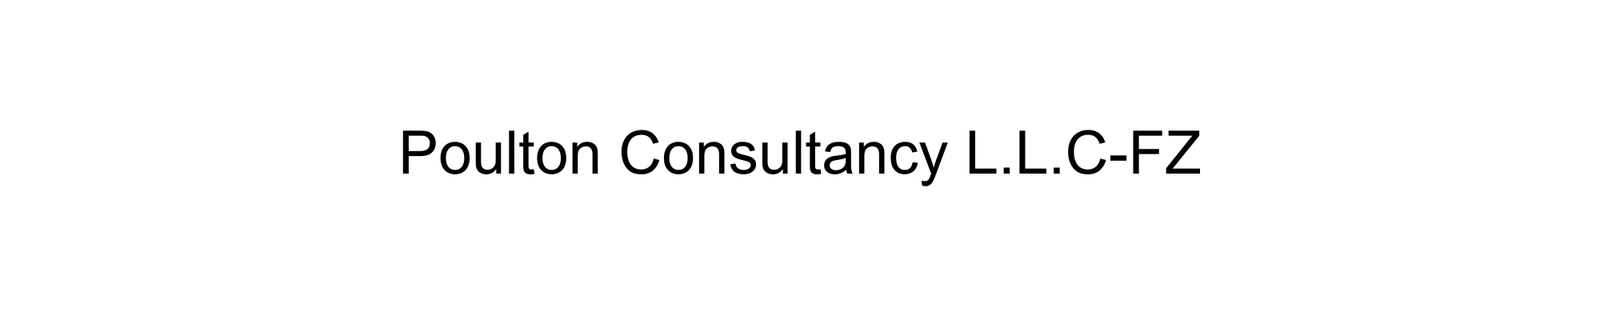 Poulton-Consultancy-LLC